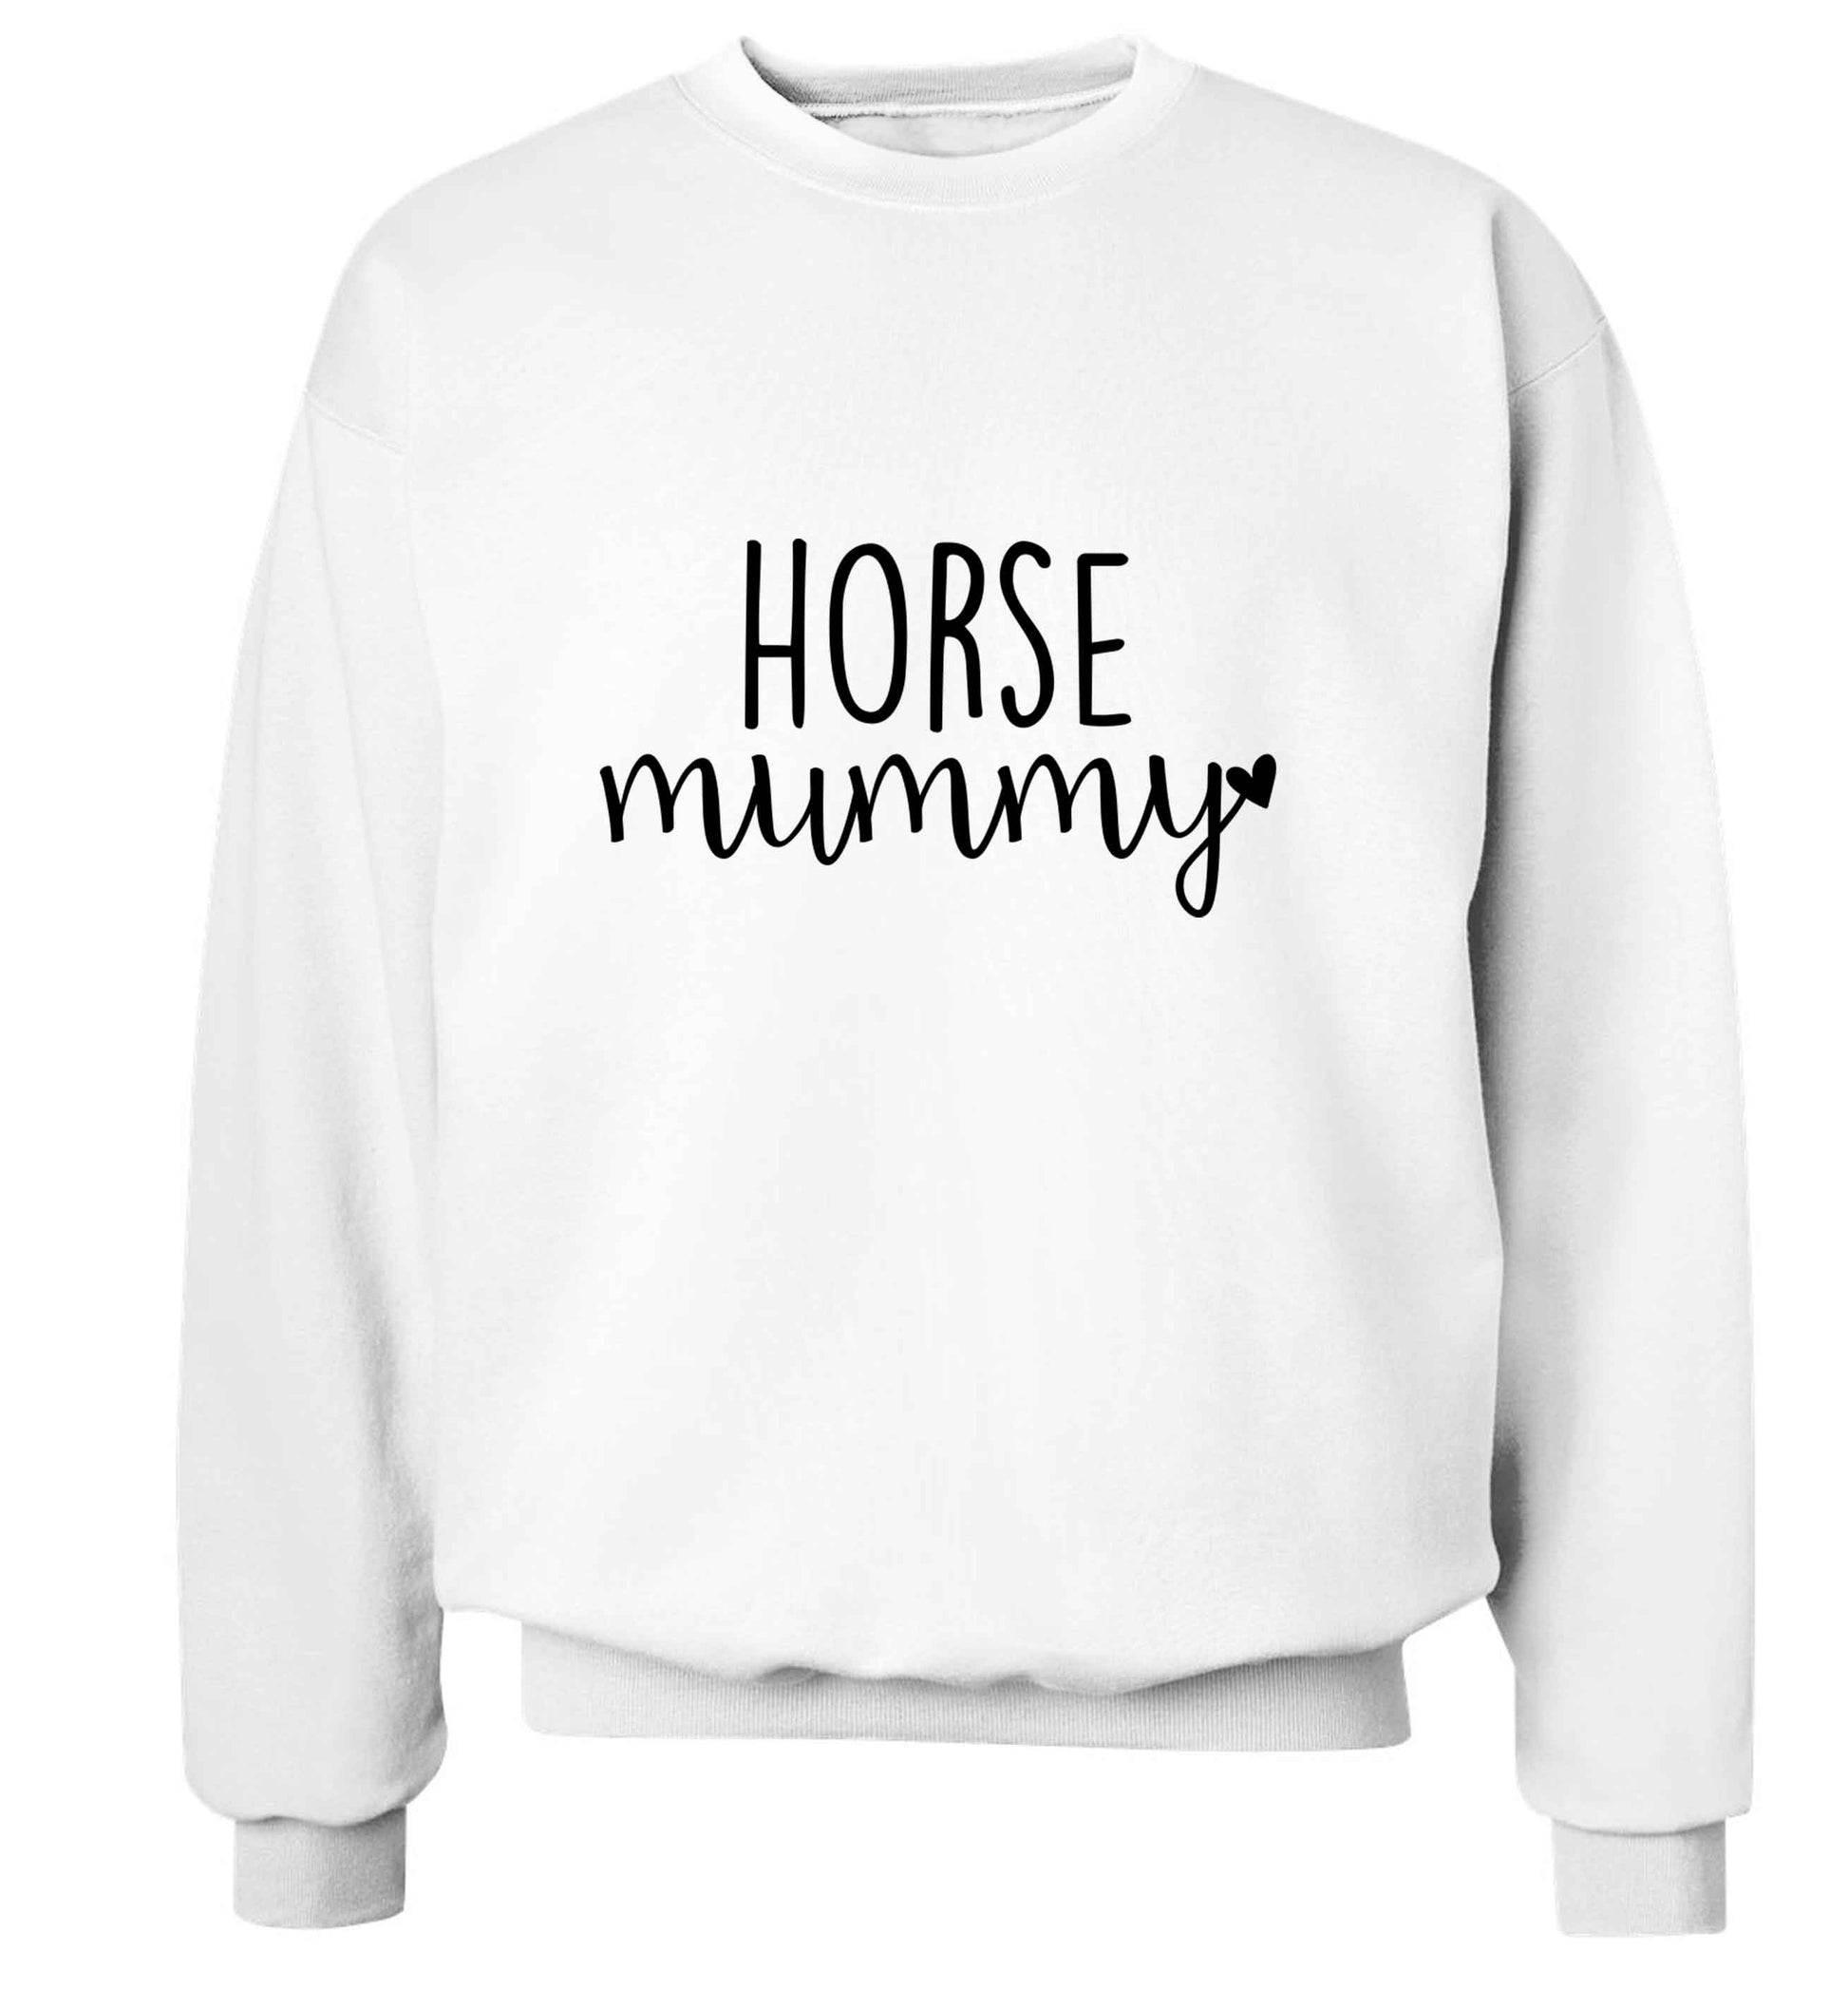 Horse mummy adult's unisex white sweater 2XL